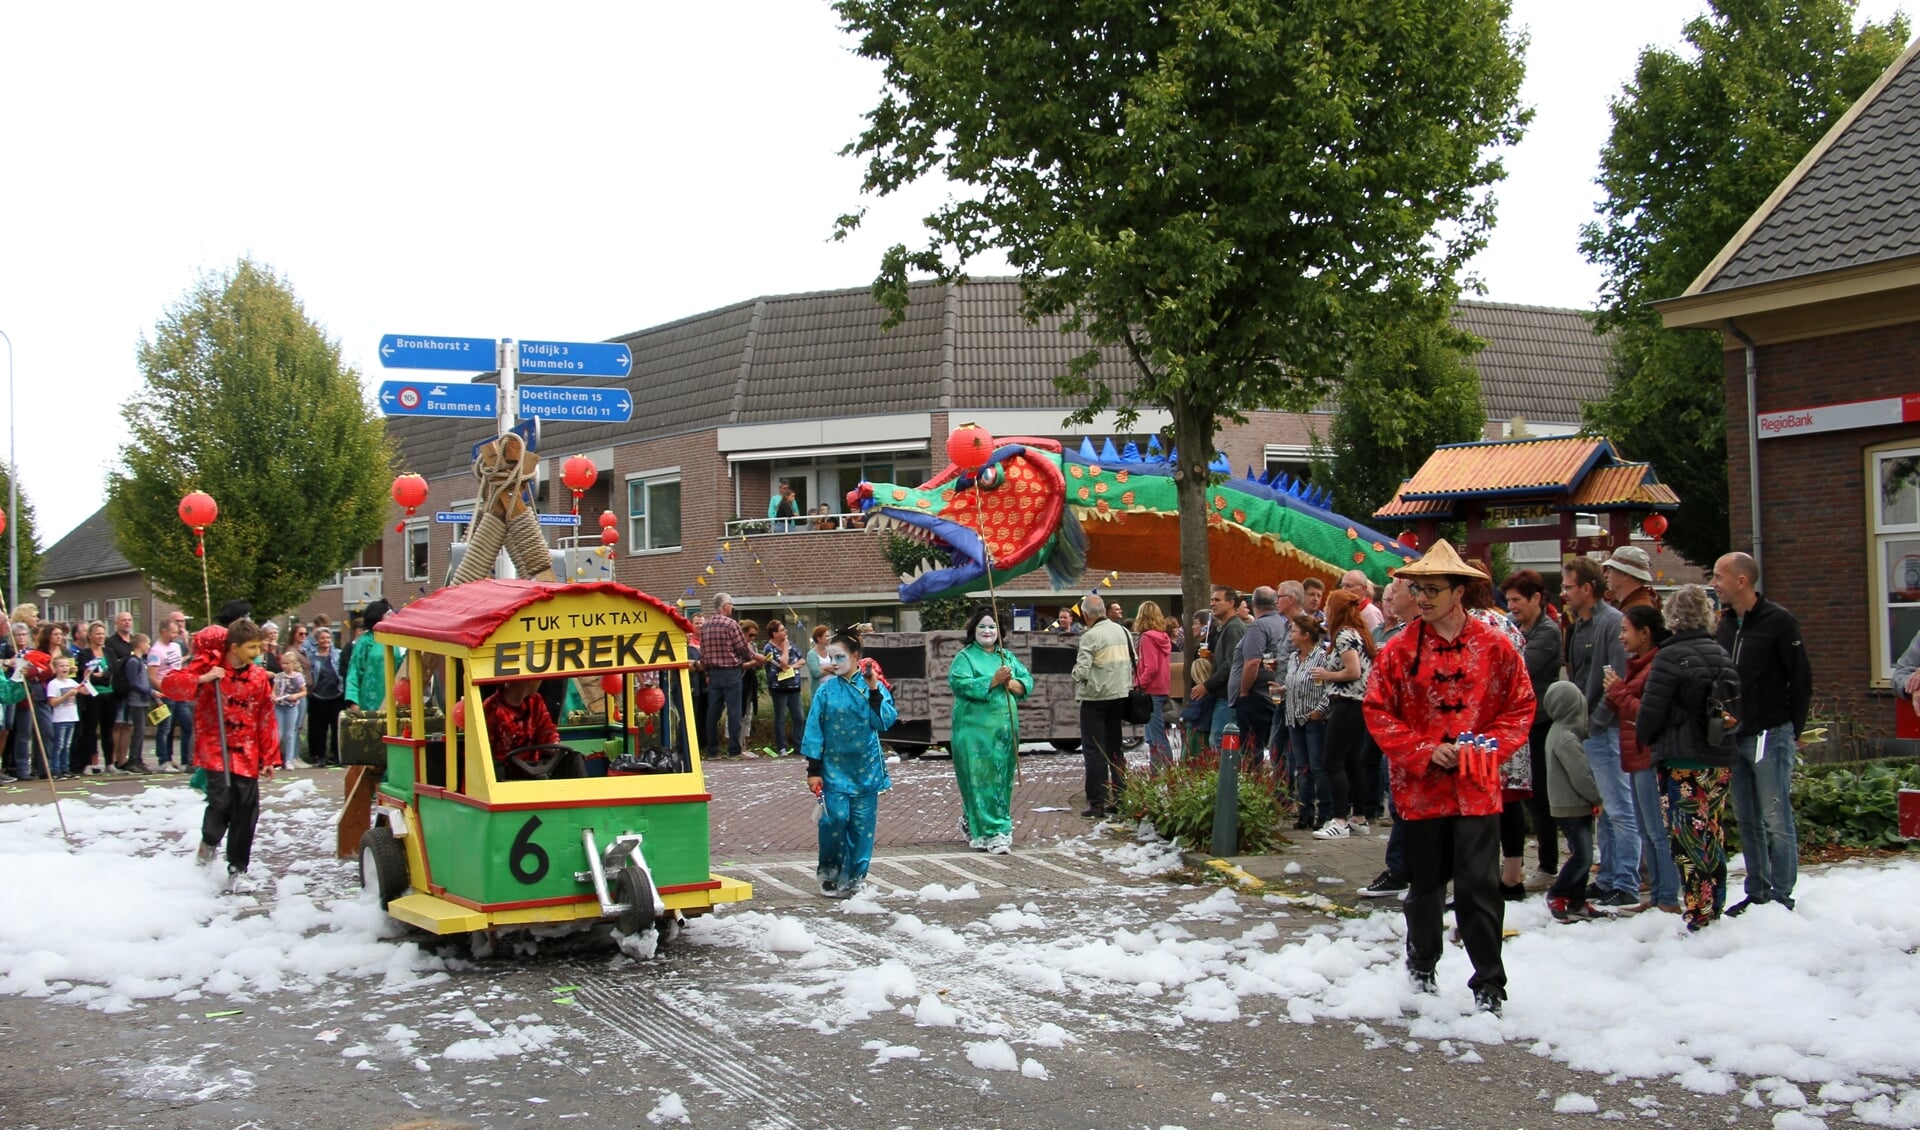 Eureka beeldde het Chinees Nieuwjaar uit met tuktuk en Chinese draak. Foto: Achterhoekfoto.nl/Liesbeth Spaansen